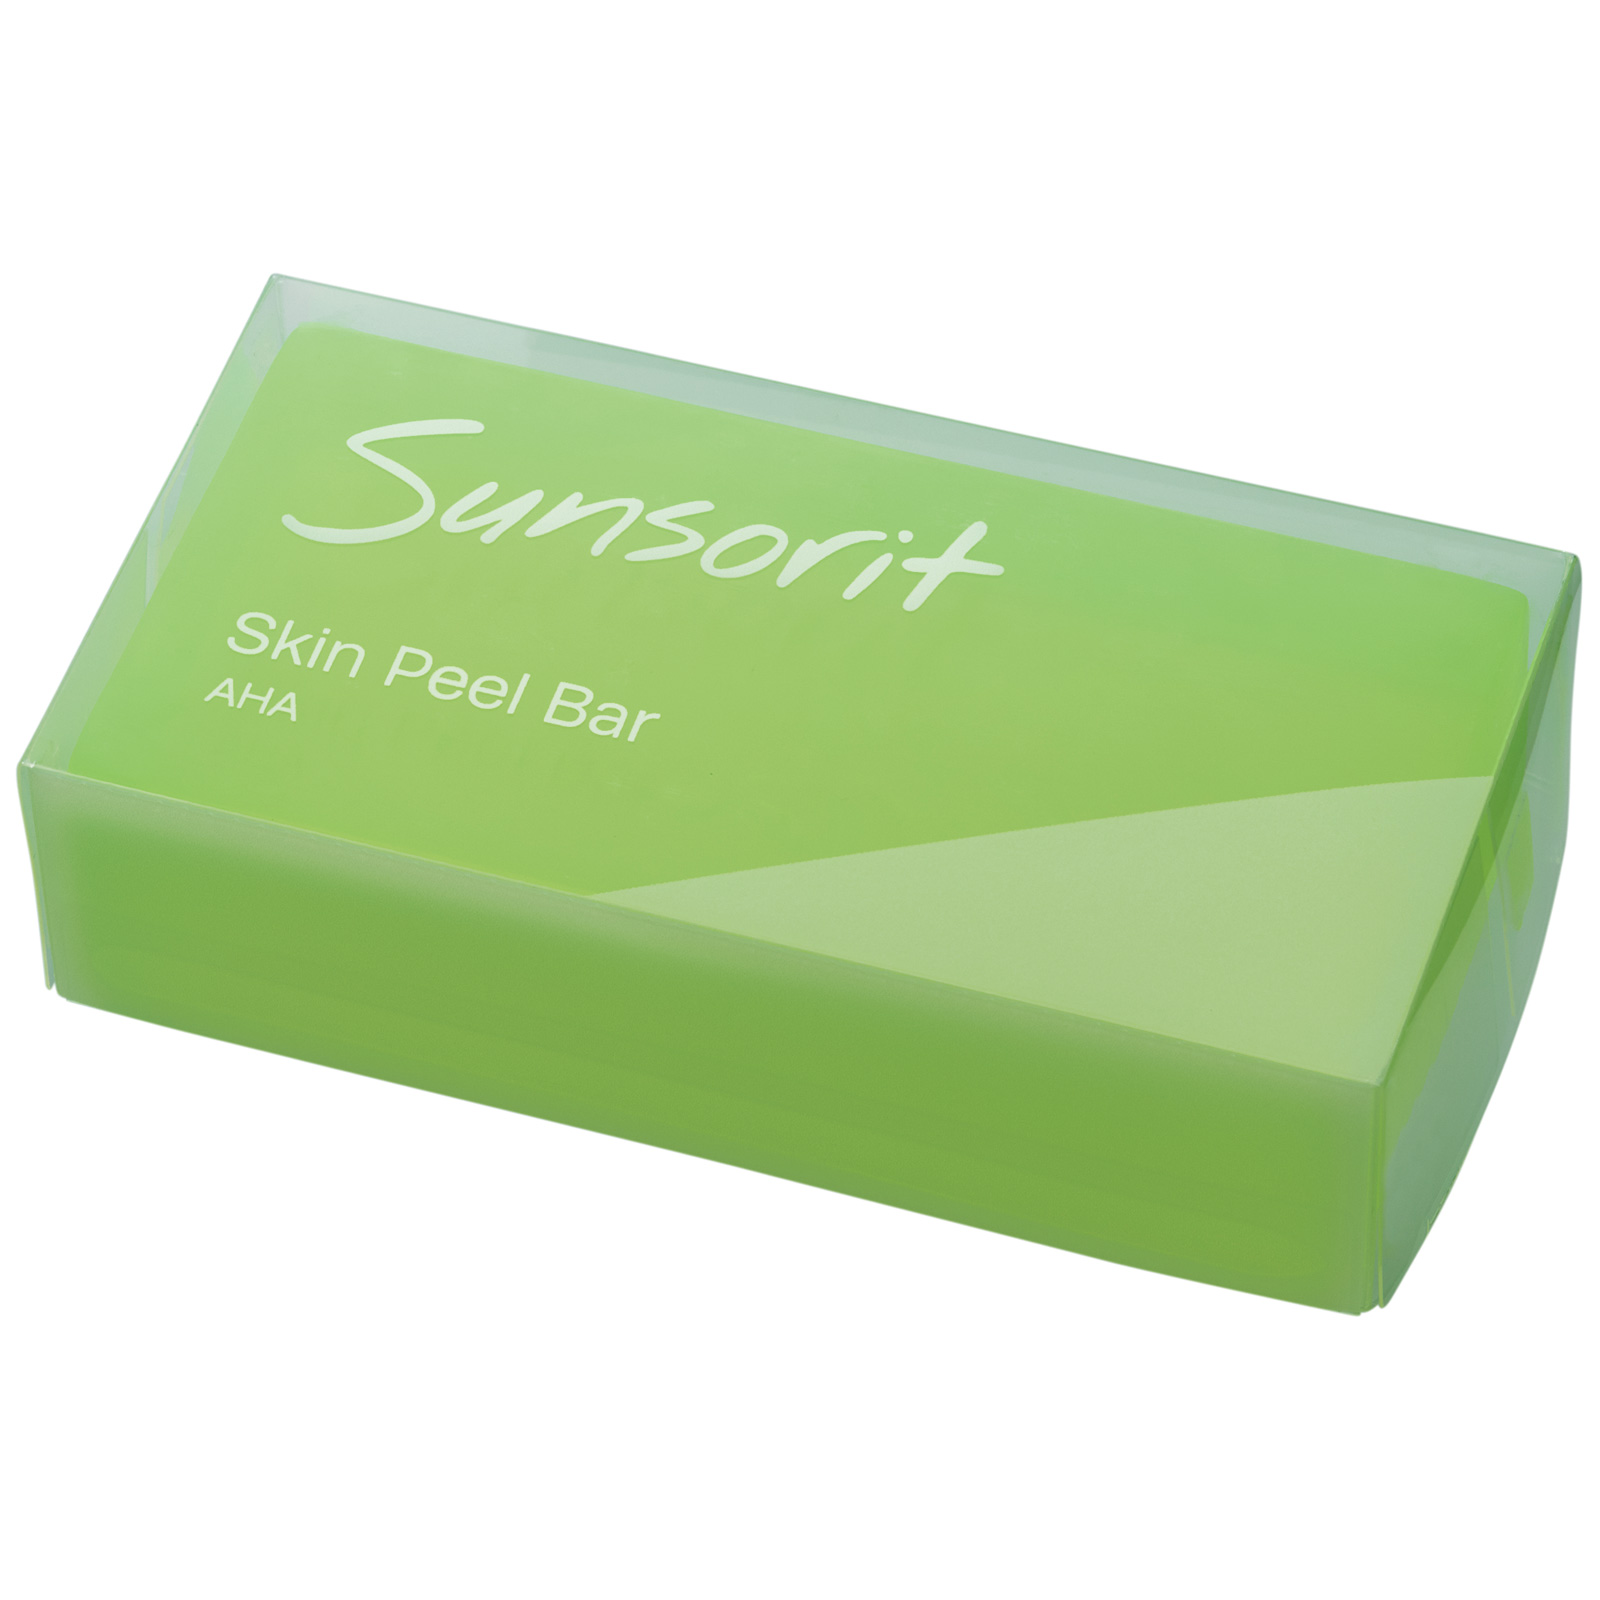 Sunsorit Skin Peel Bar AHA. Пилинговое мыло с AHA-кислотами Сансорит для нормальной и жирной кожи, 135 г